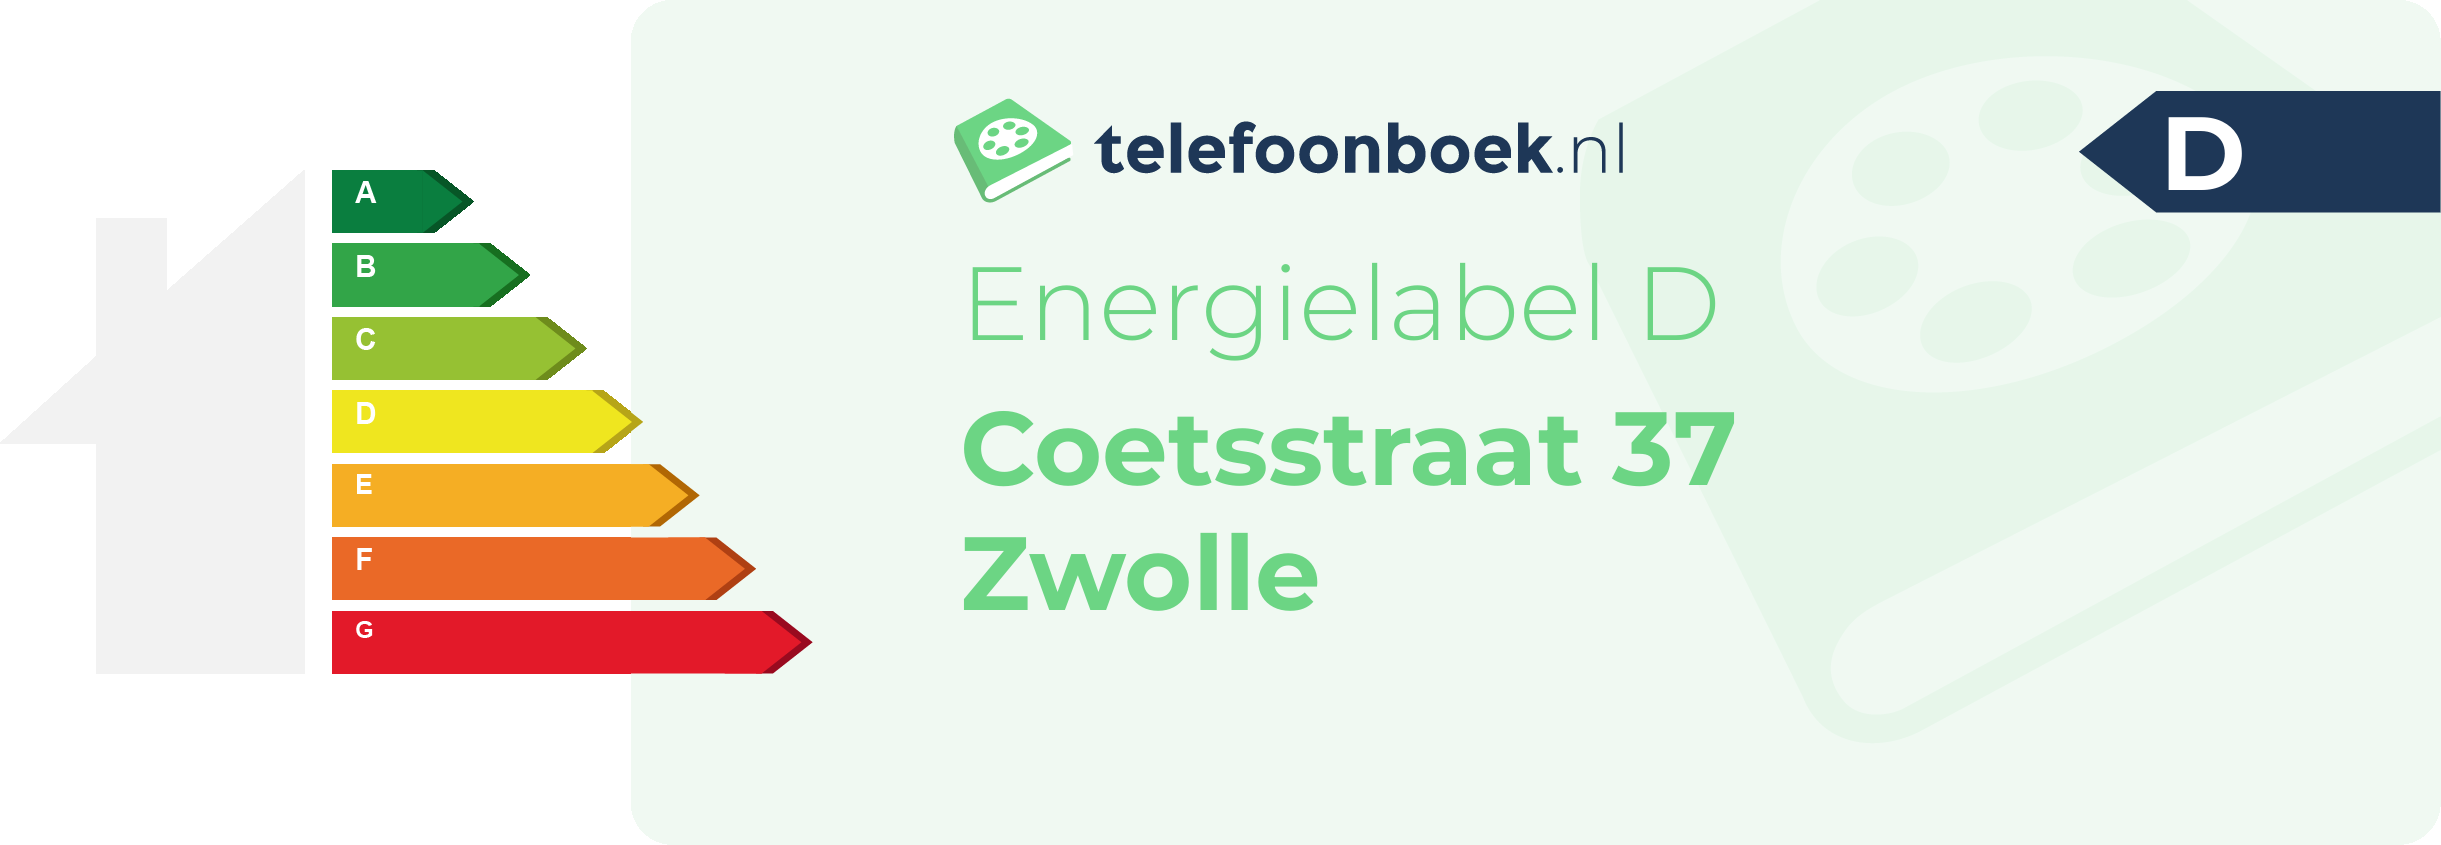 Energielabel Coetsstraat 37 Zwolle